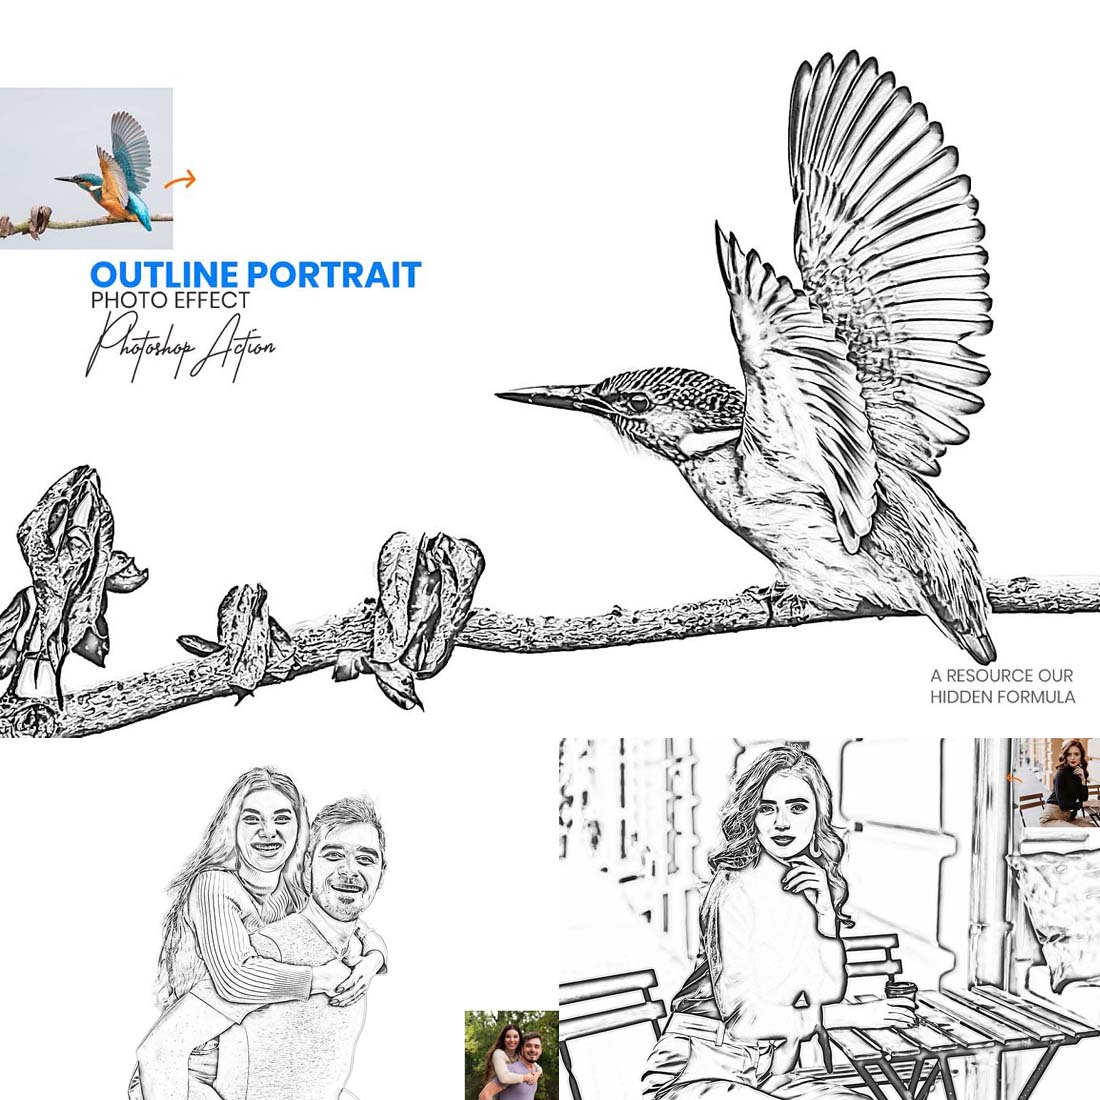 Outline Portrait Photoshop Action cover image.